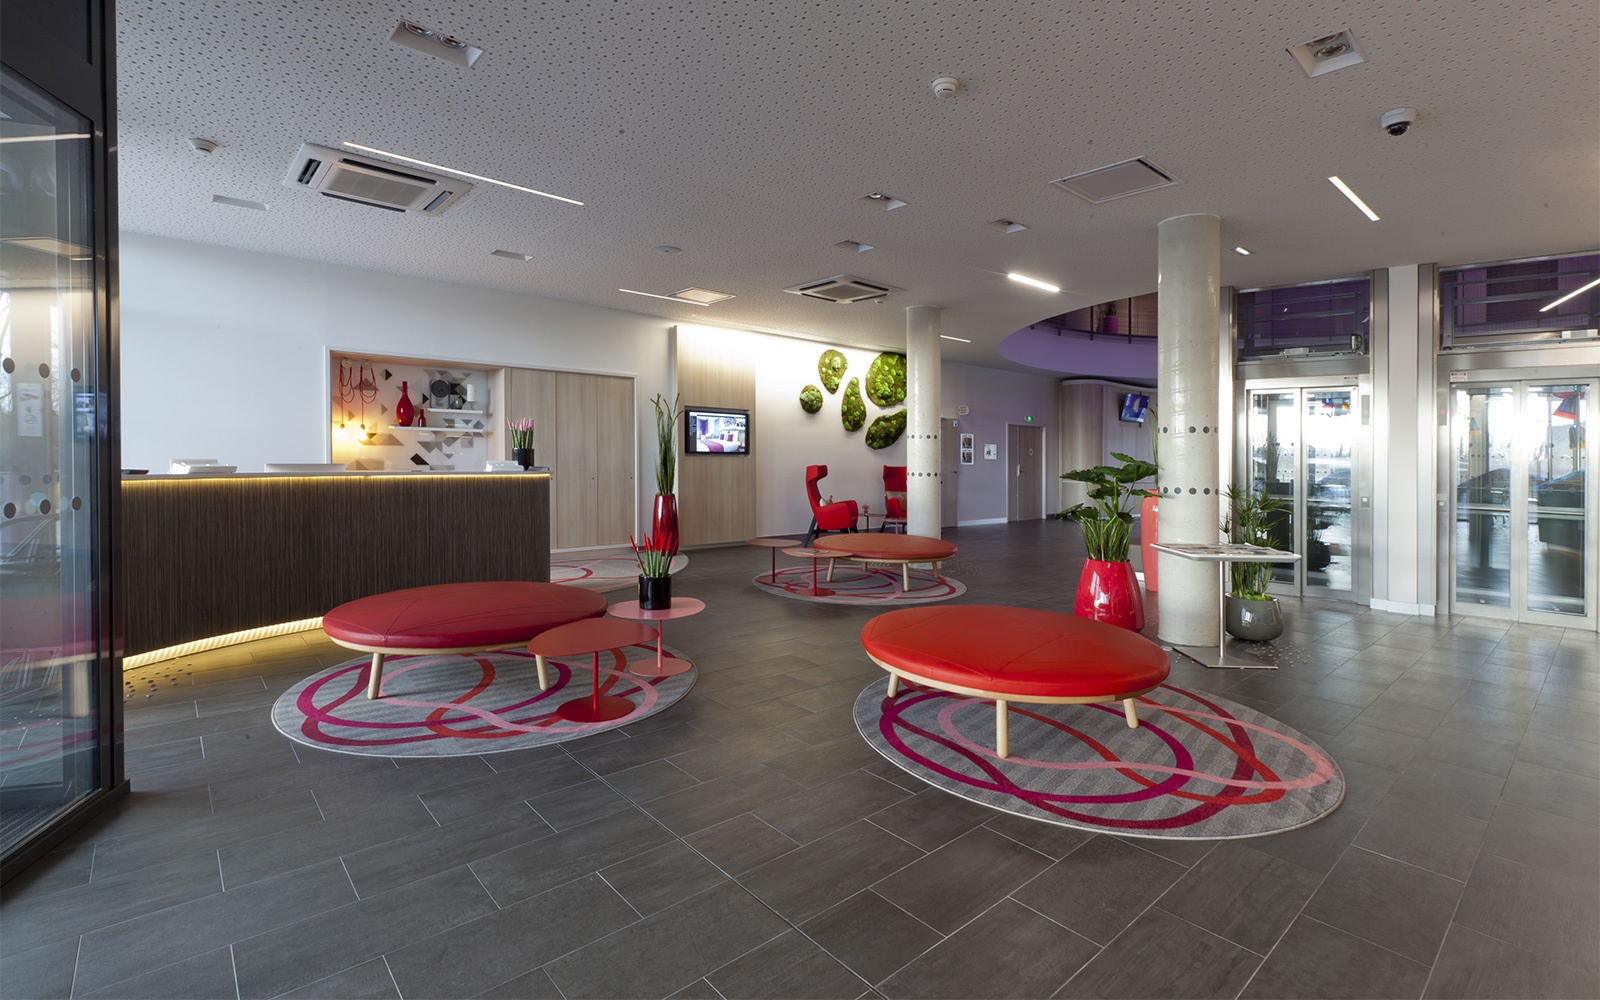 Hotelteppich: Abgepasste runde Teppiche mit geschwungenen Linien erzeugen kleine visuell-abgetrennte Sitzgruppen in der Hotellobby